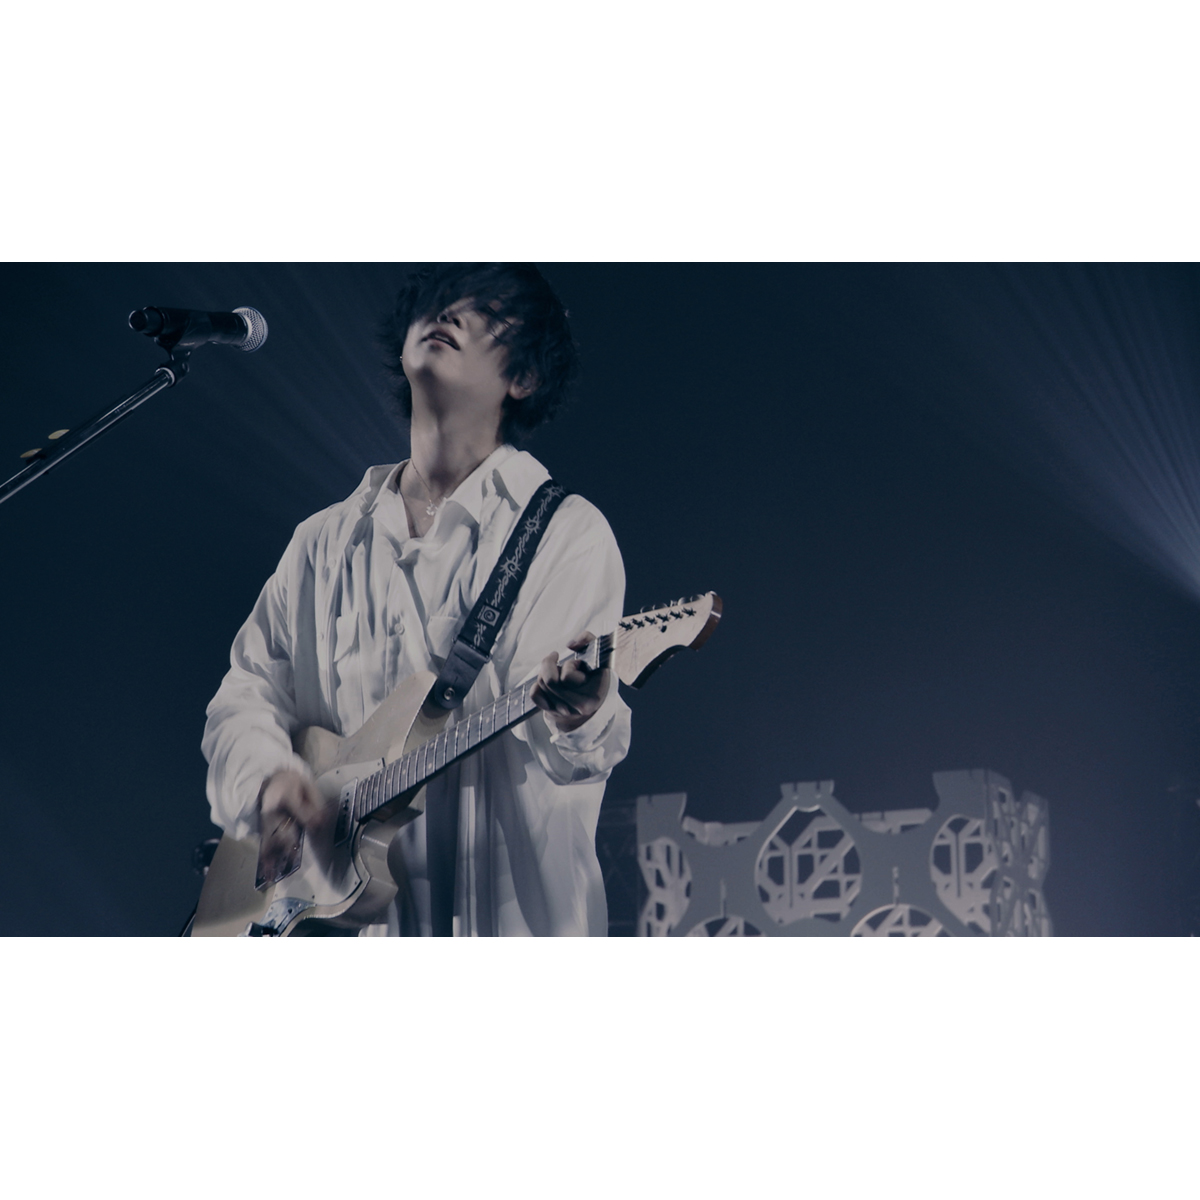 斉藤壮馬 Blu-ray u0026 DVD「Live Tour 2021 We are in bloom! at Tokyo Garden Theater」より、『パレット』のライブ映像公開！  (2021年8月27日) - エキサイトニュース